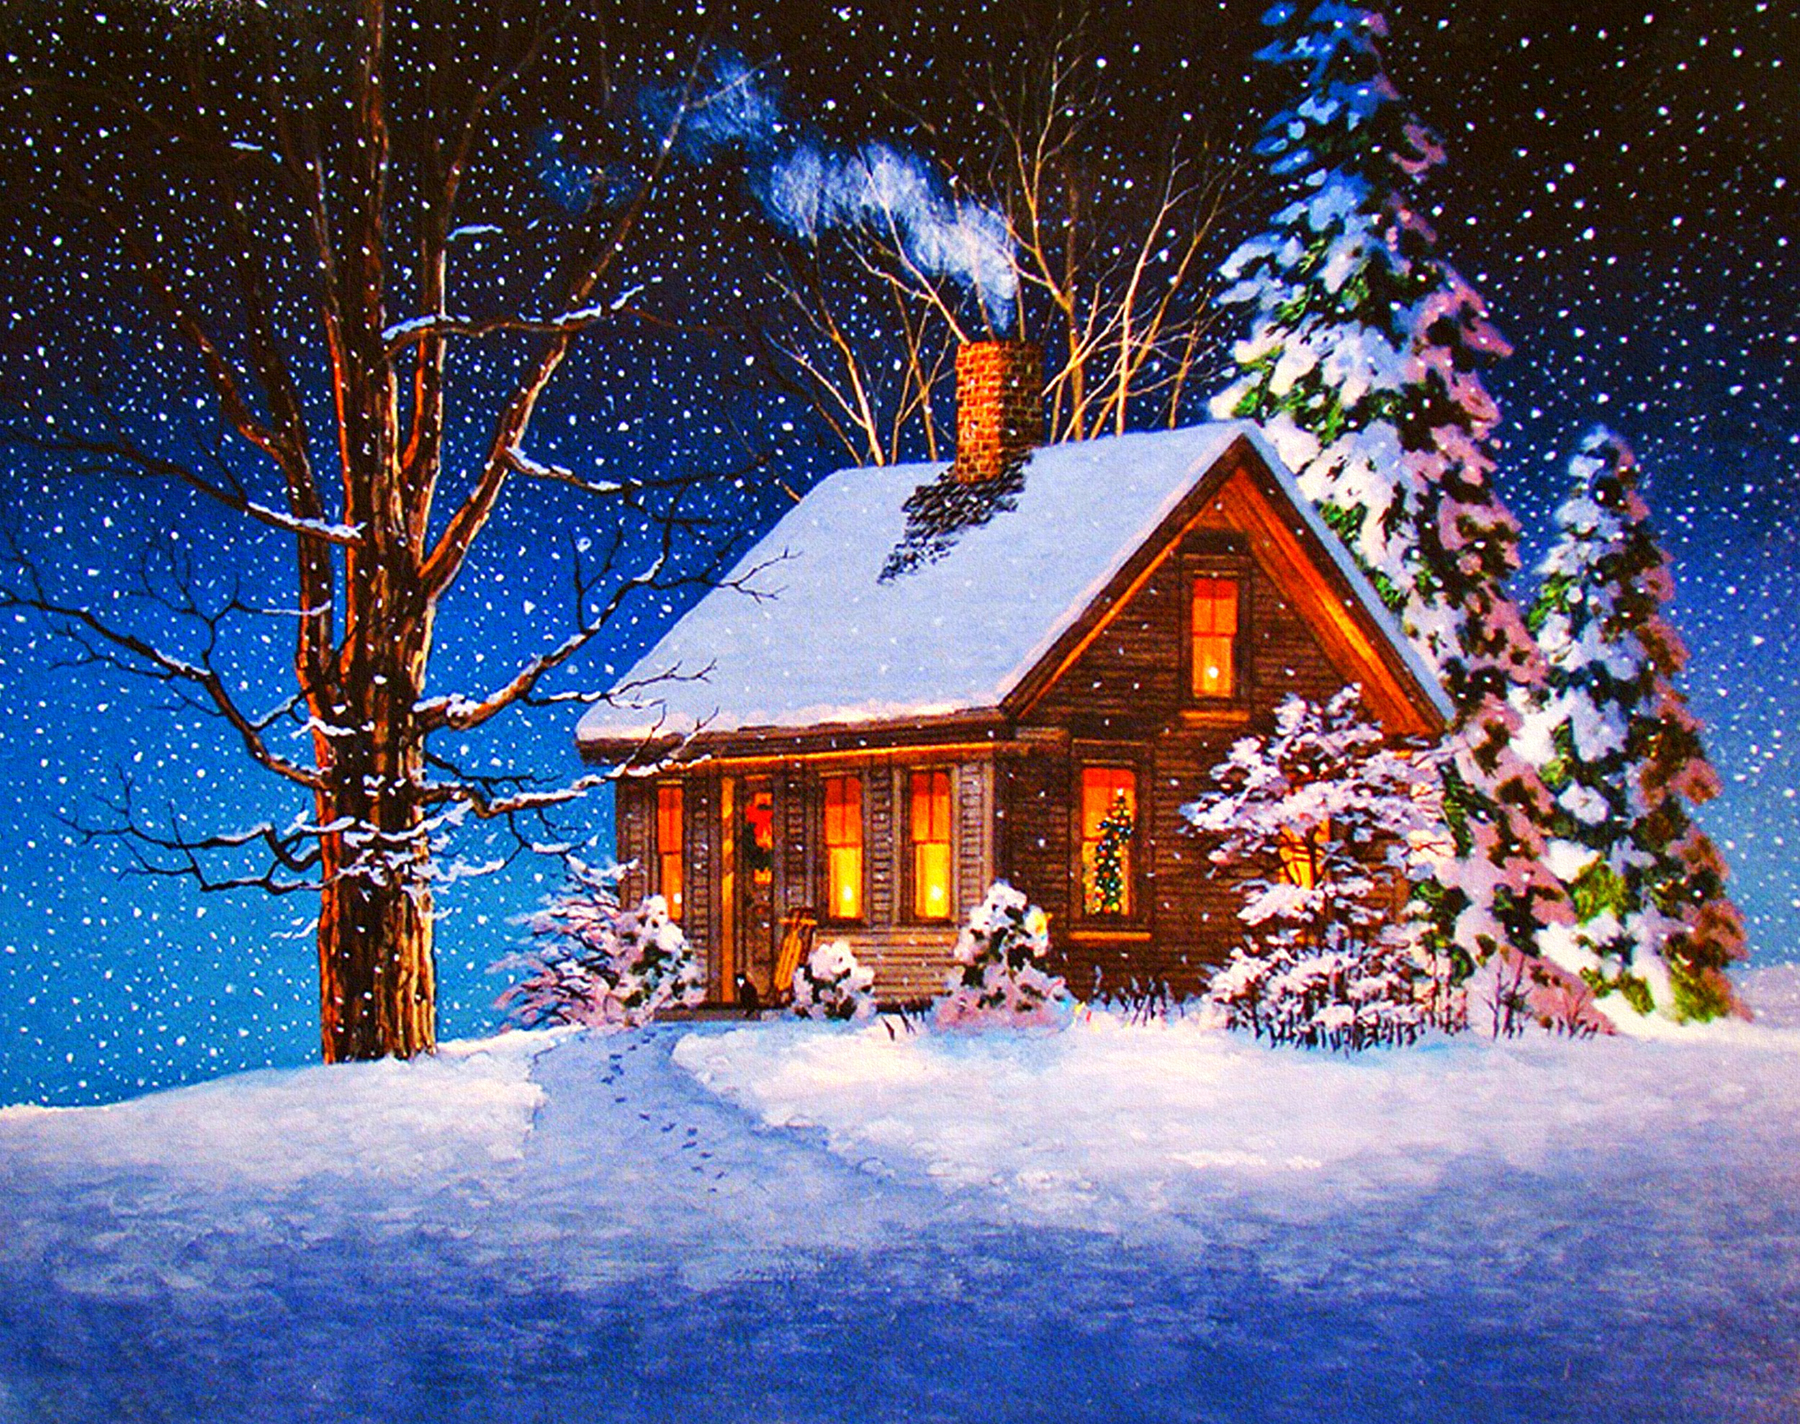 Скачать обои бесплатно Зима, Снег, Дерево, Рождество, Дом, Домик, Снегопад, Праздничные картинка на рабочий стол ПК